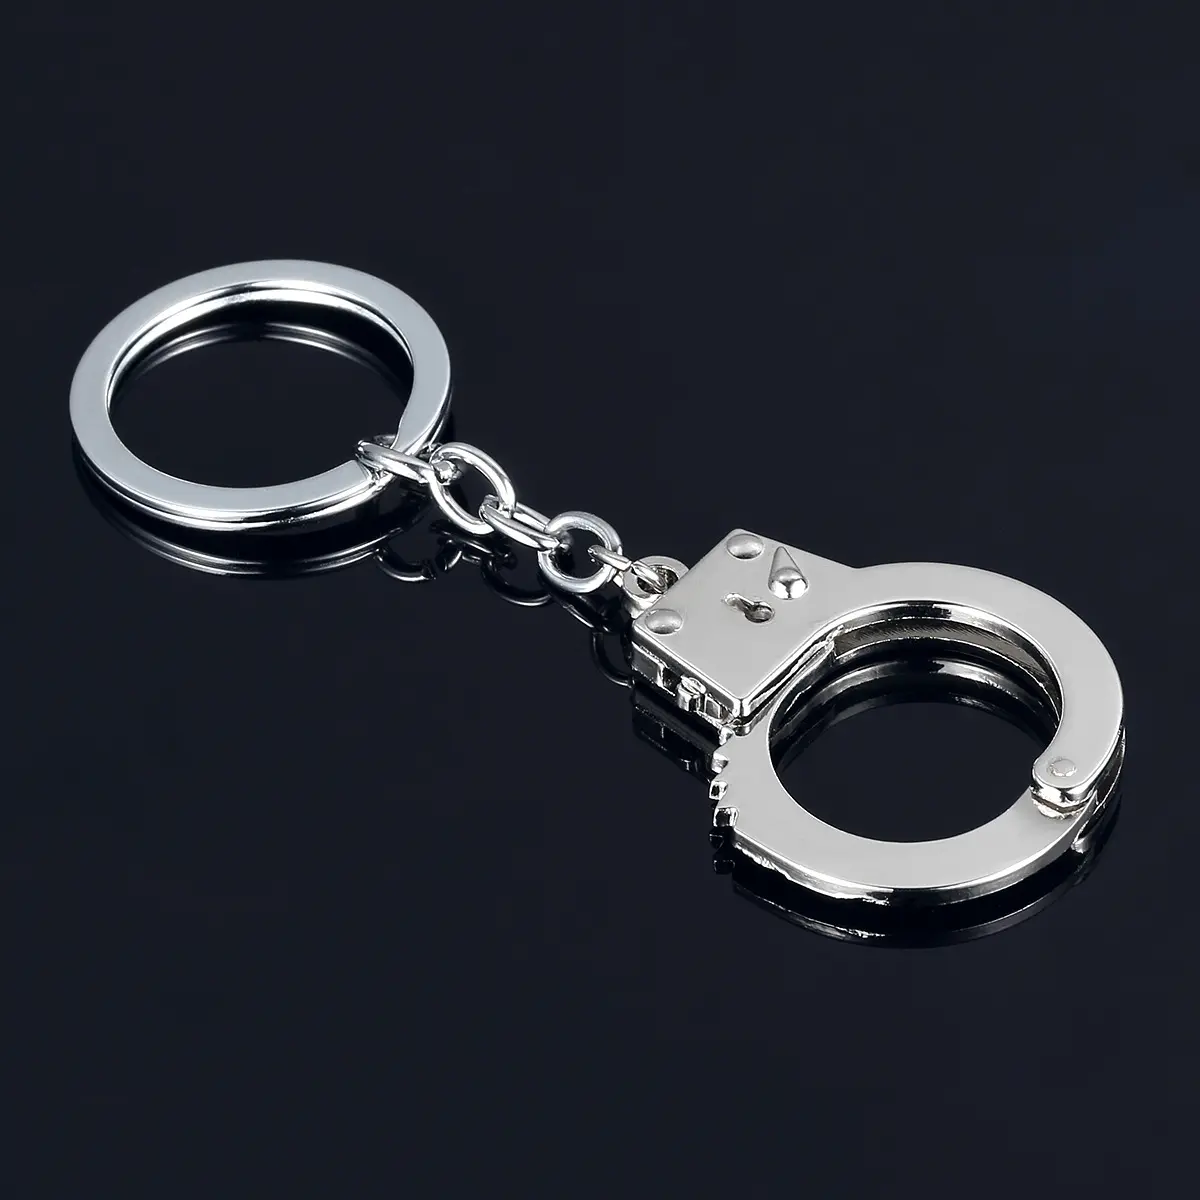 Porte-clés de haute qualité en métal porte-monnaie Mini Simulation Police menottes porte-clés pour Souvenir